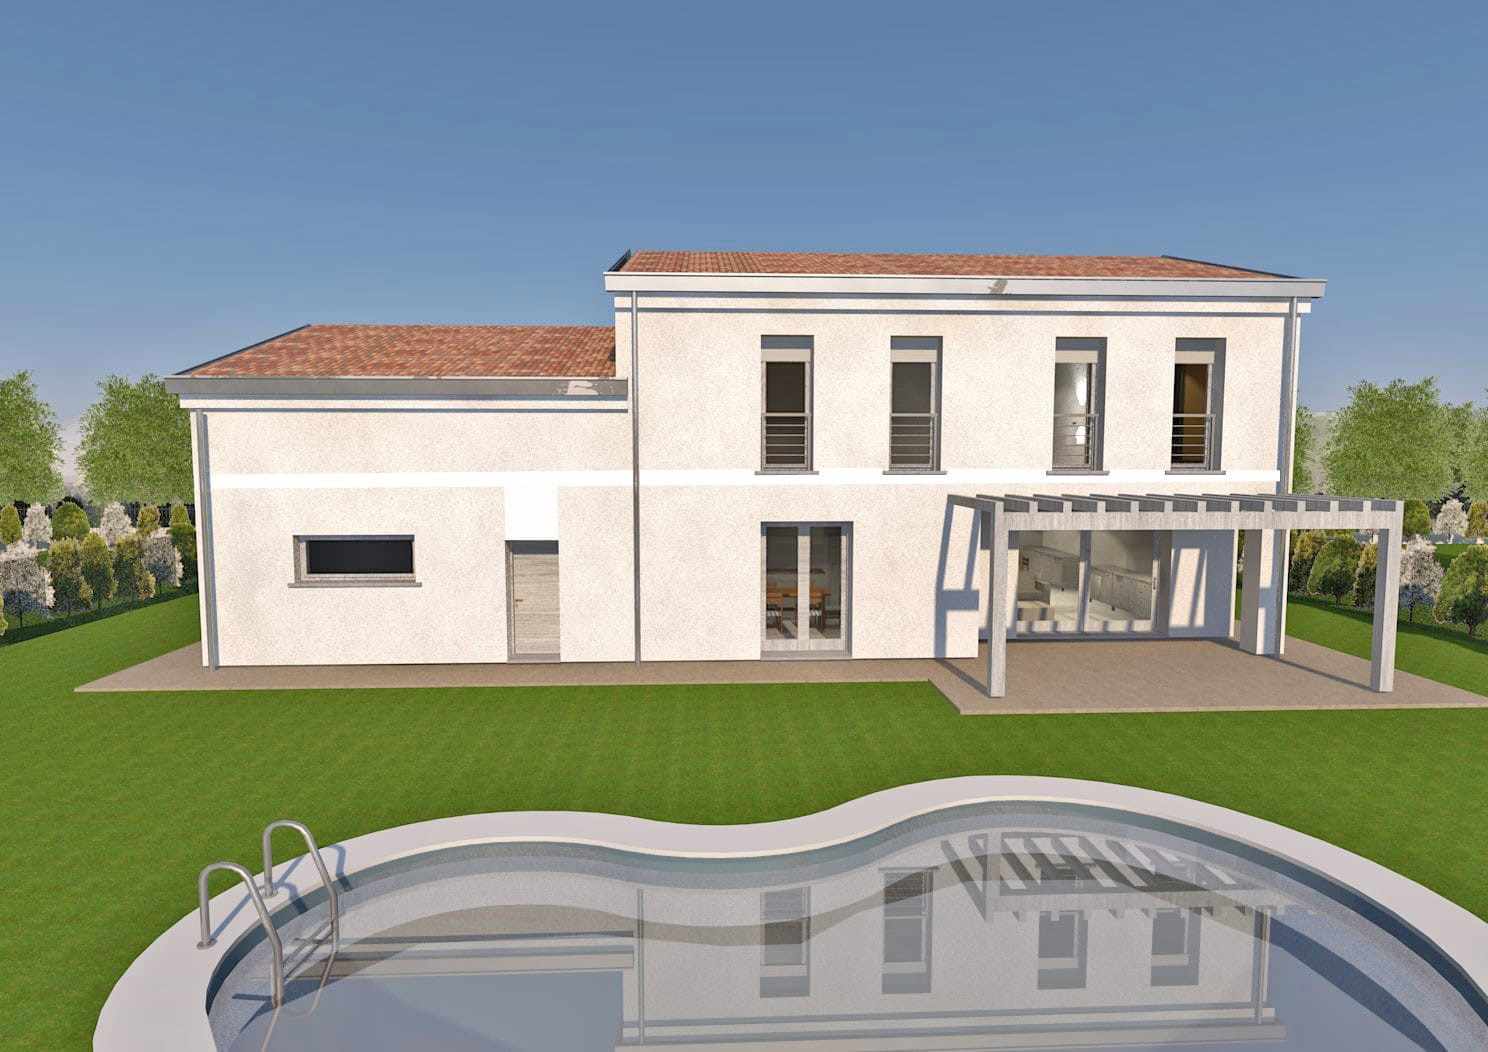 Villa in Legno in provincia di Padova con sistema costruttivo Platform-Frame e copertura con travi a vista